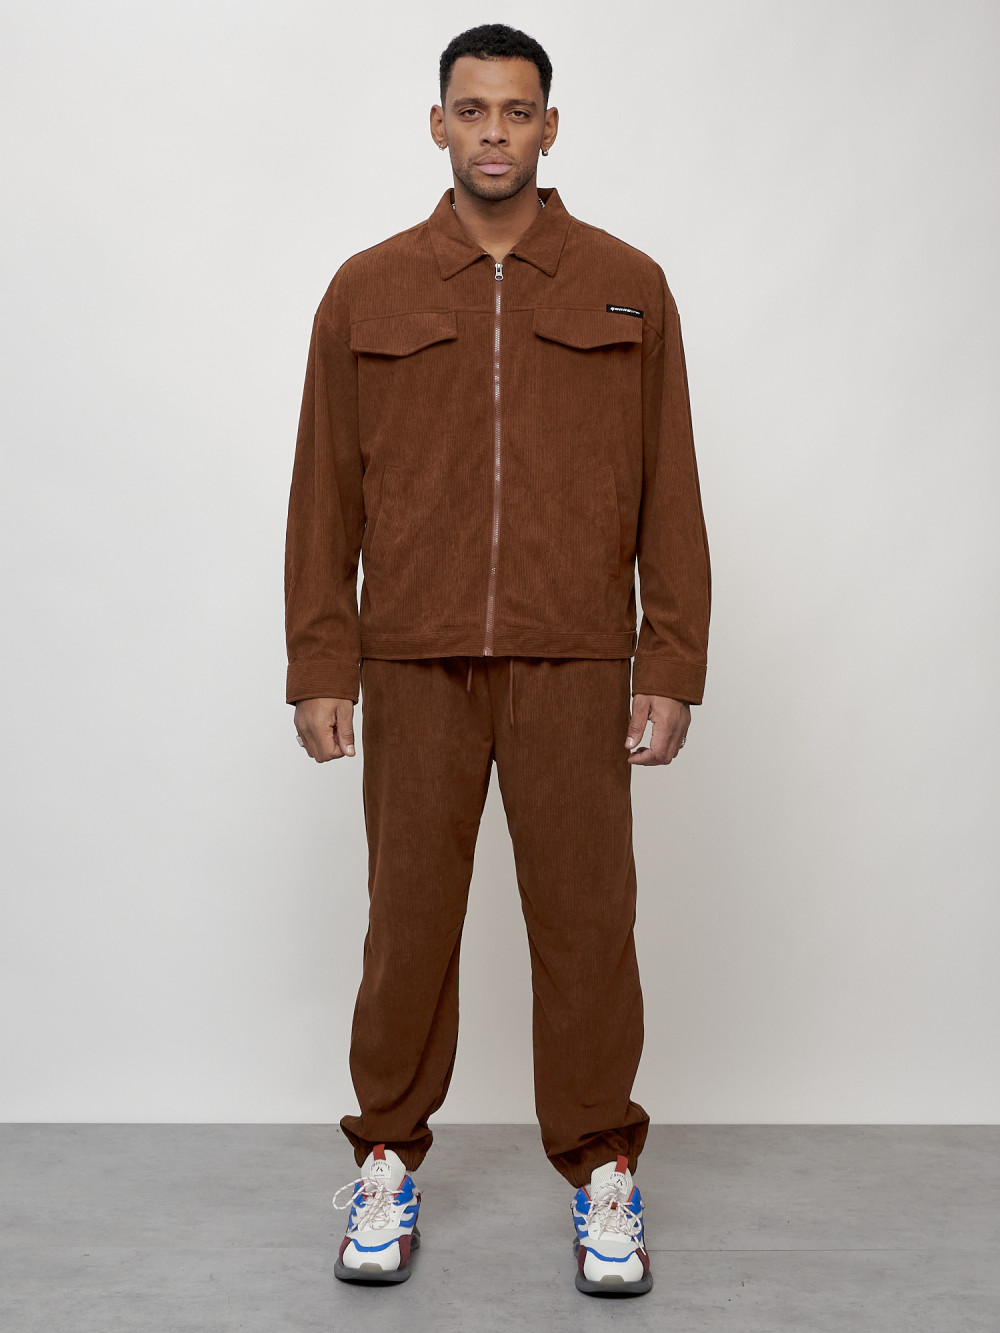 Спортивный костюм мужской модный из микровельвета коричневого цвета 55002K